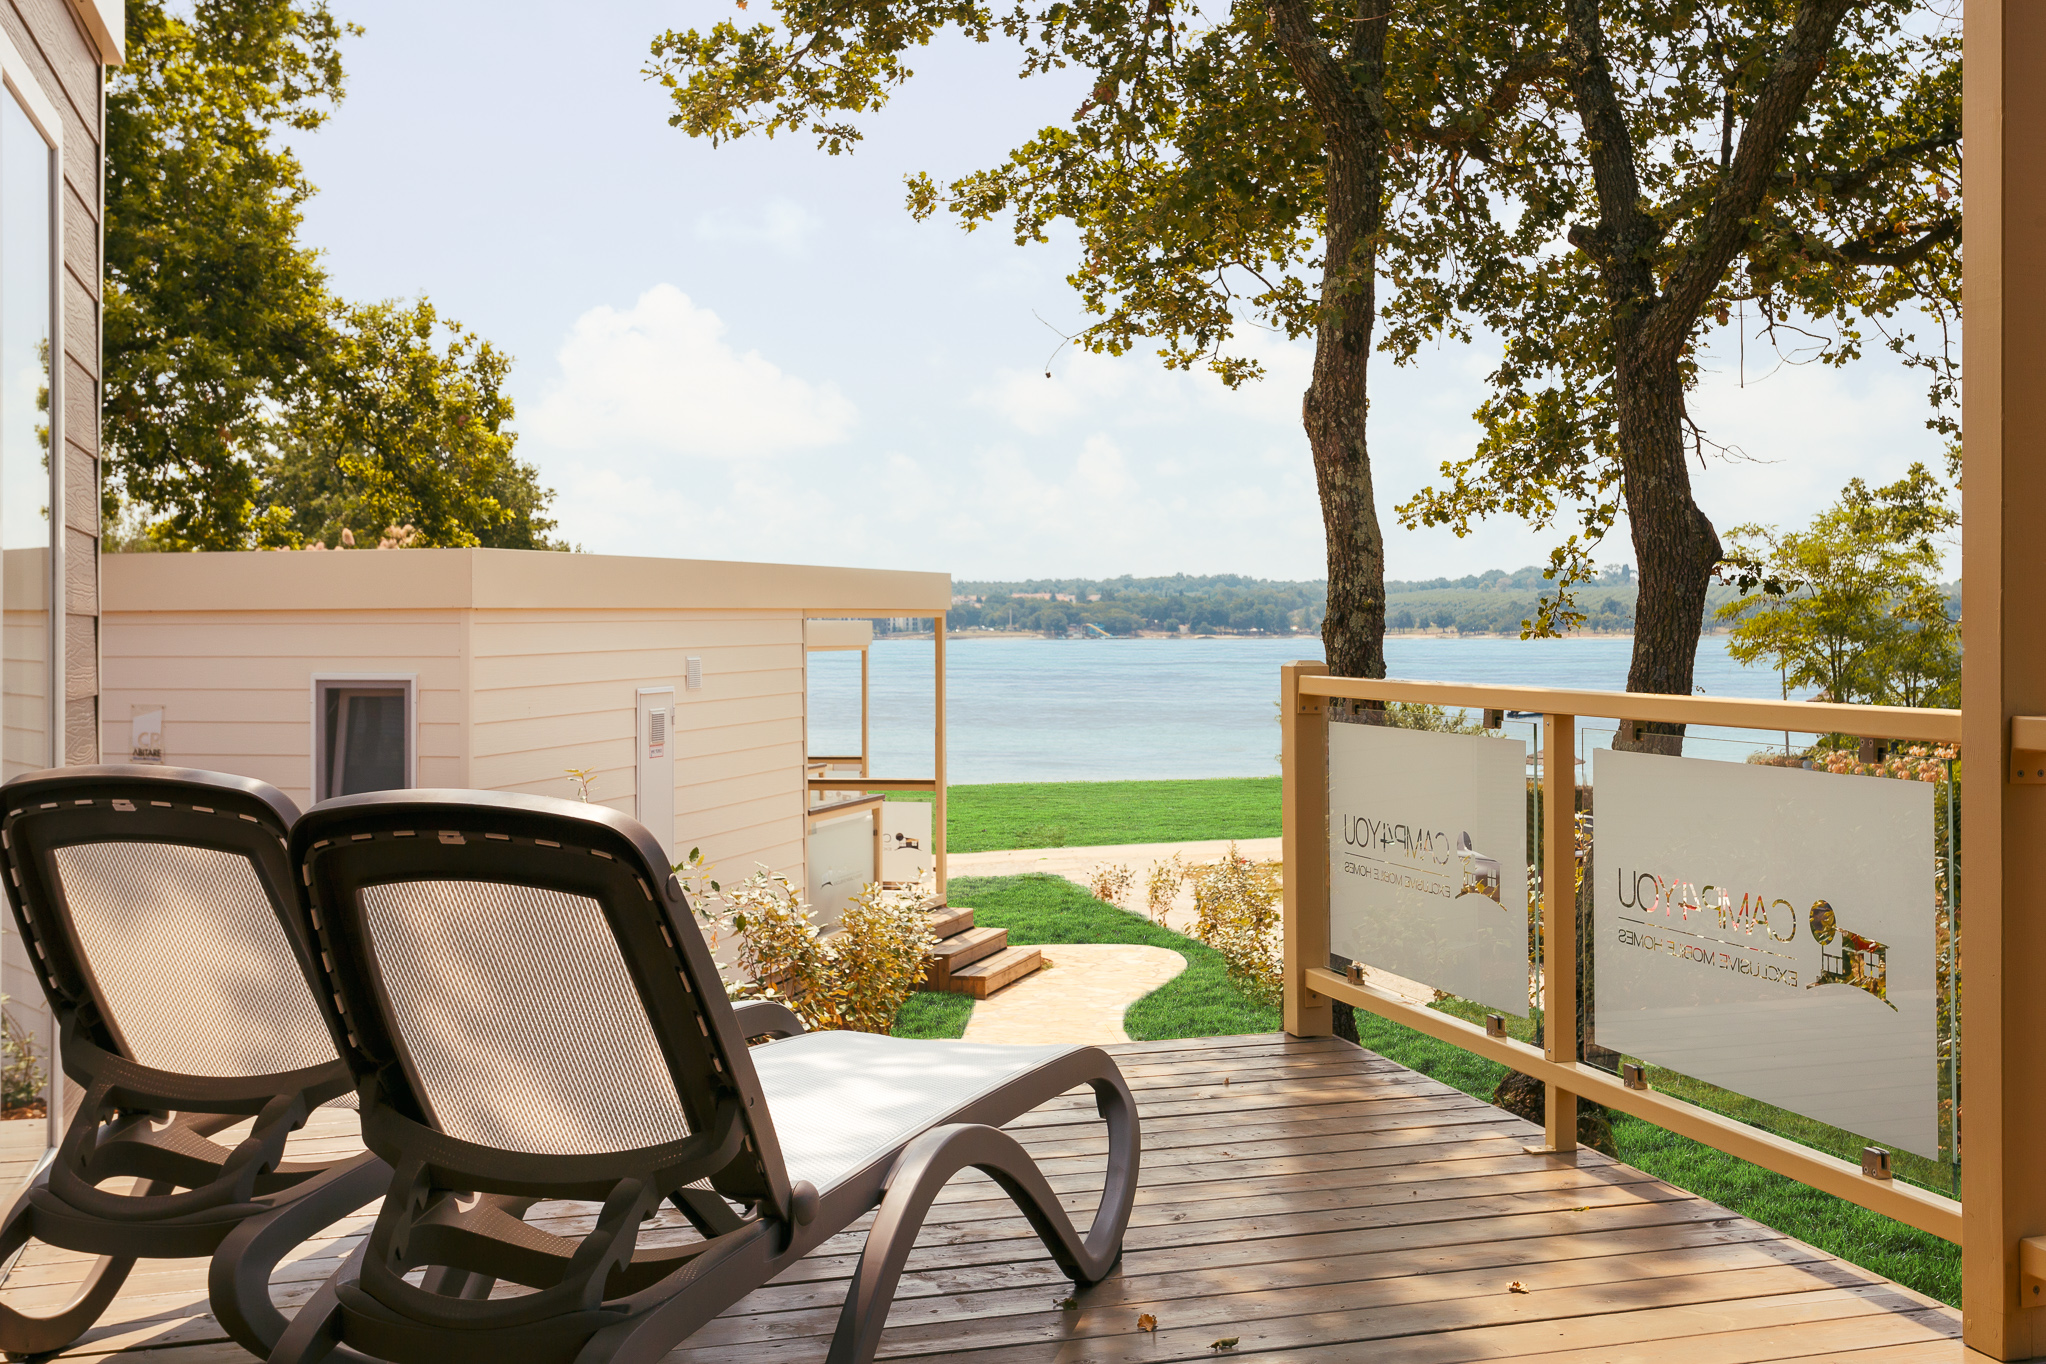 Mobile Home Fkk Naturist Premium Comfort Fkk Solaris Naturist Camping Resort Porečtar Istria 7057